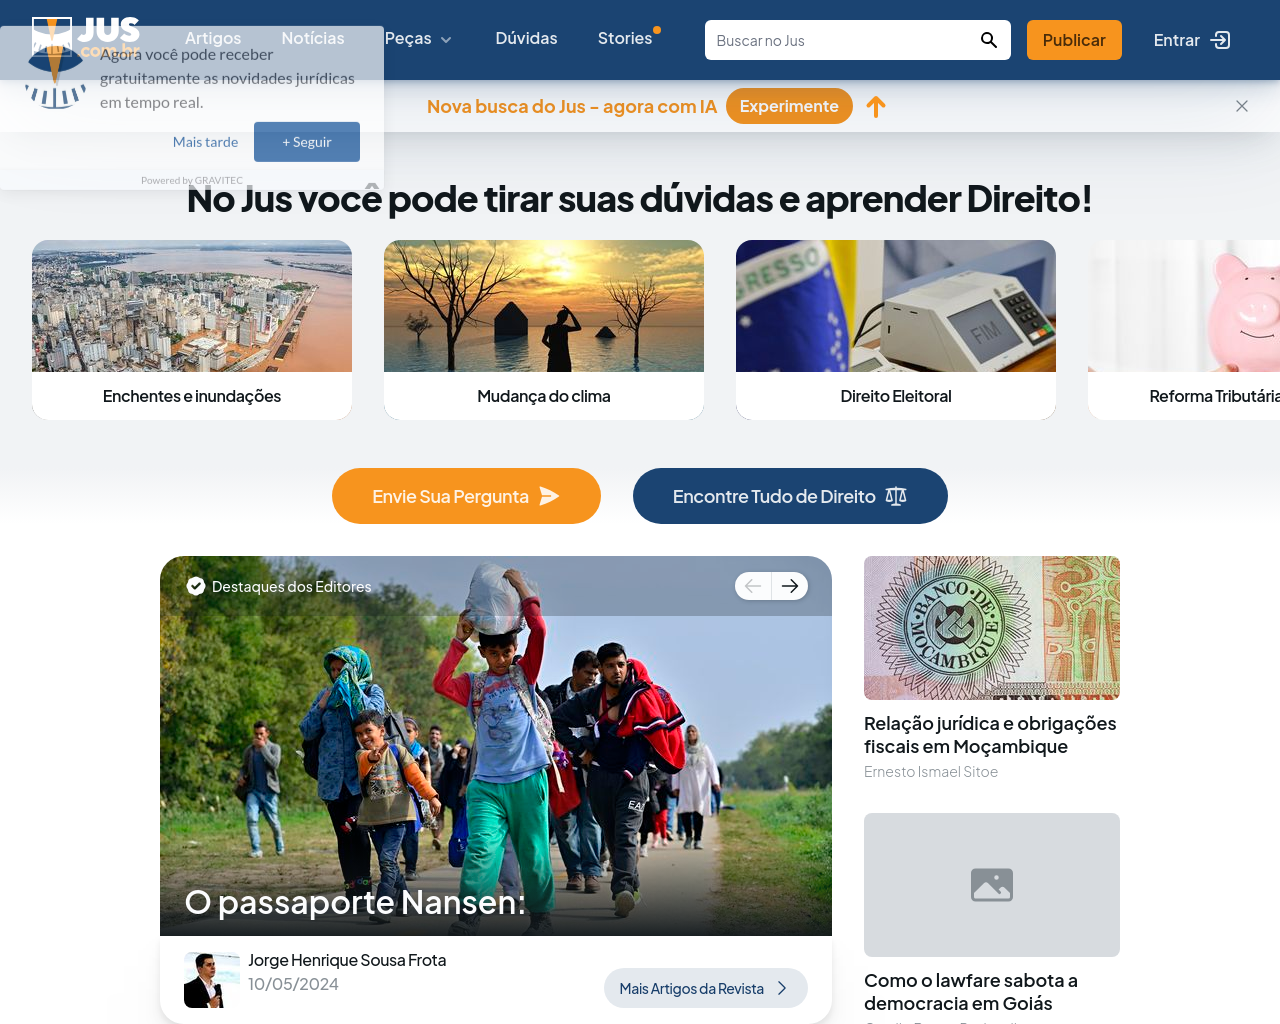 jus.com.br